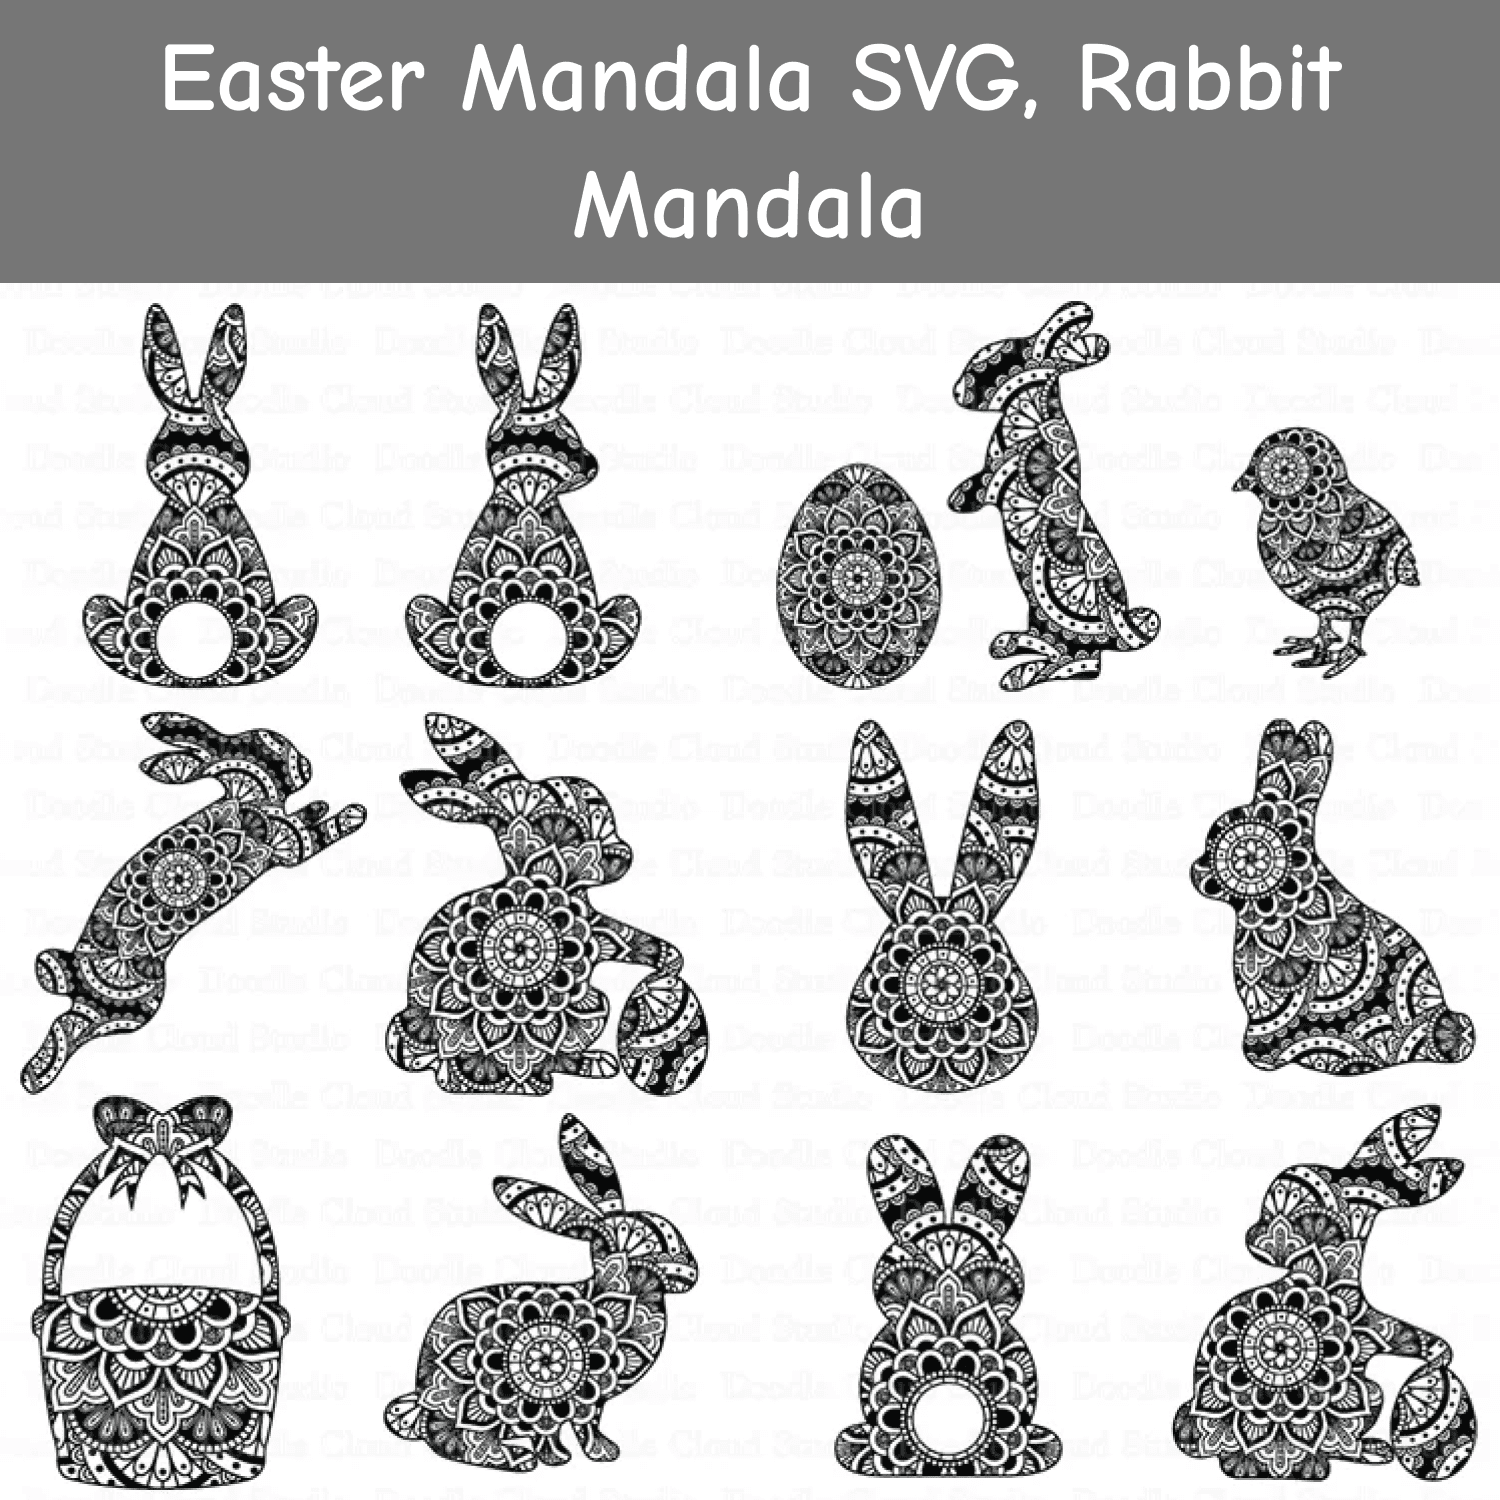 Easter Mandala SVG, Rabbit Mandala.